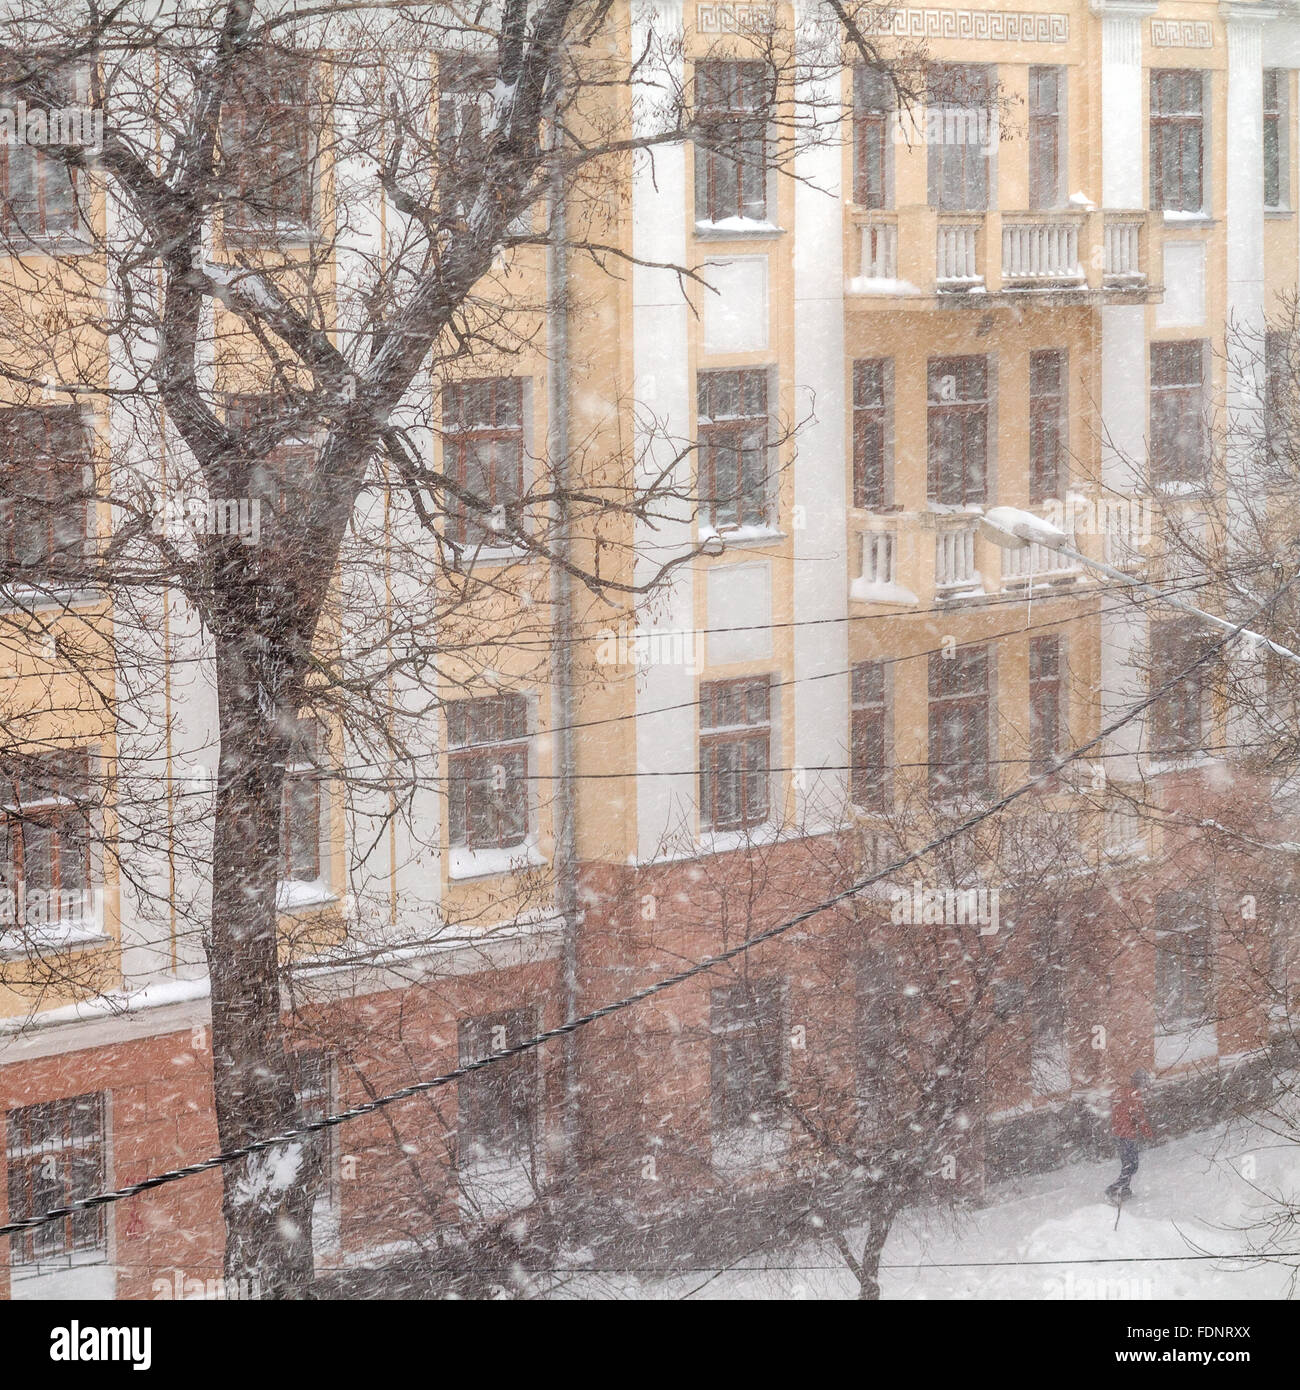 Odessa, Ucraina - 18 Gennaio 2016: un potente ciclone, tempesta, neve pesante paralizzato la città. La gente che camminava per strada assortiti Foto Stock